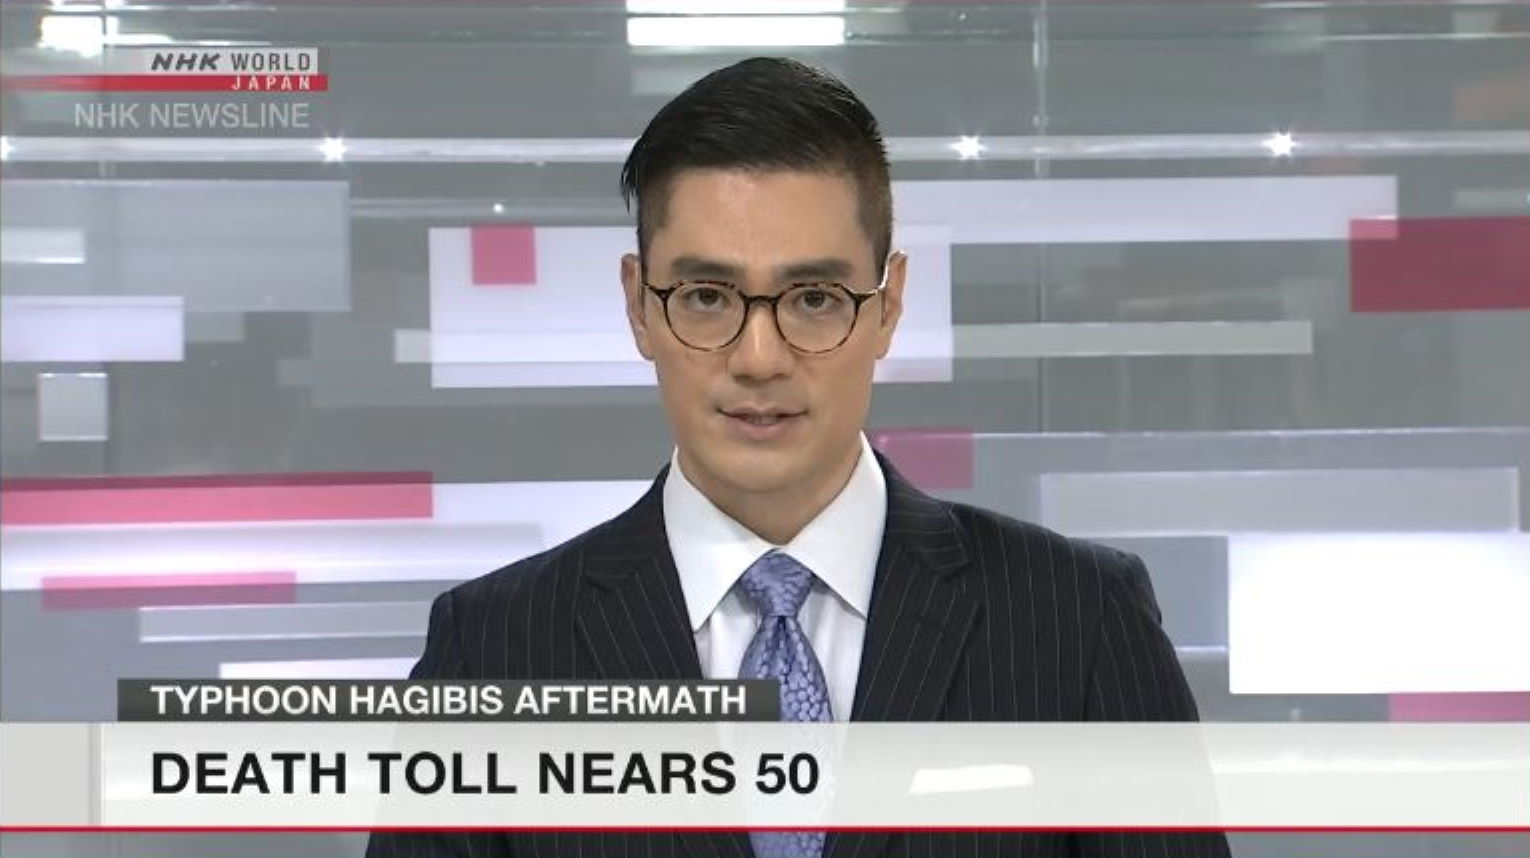 NHK World annonce 50 morts suite au passage du Typhon Hagibis. Le bilan n'est malheureusement pas définitif.